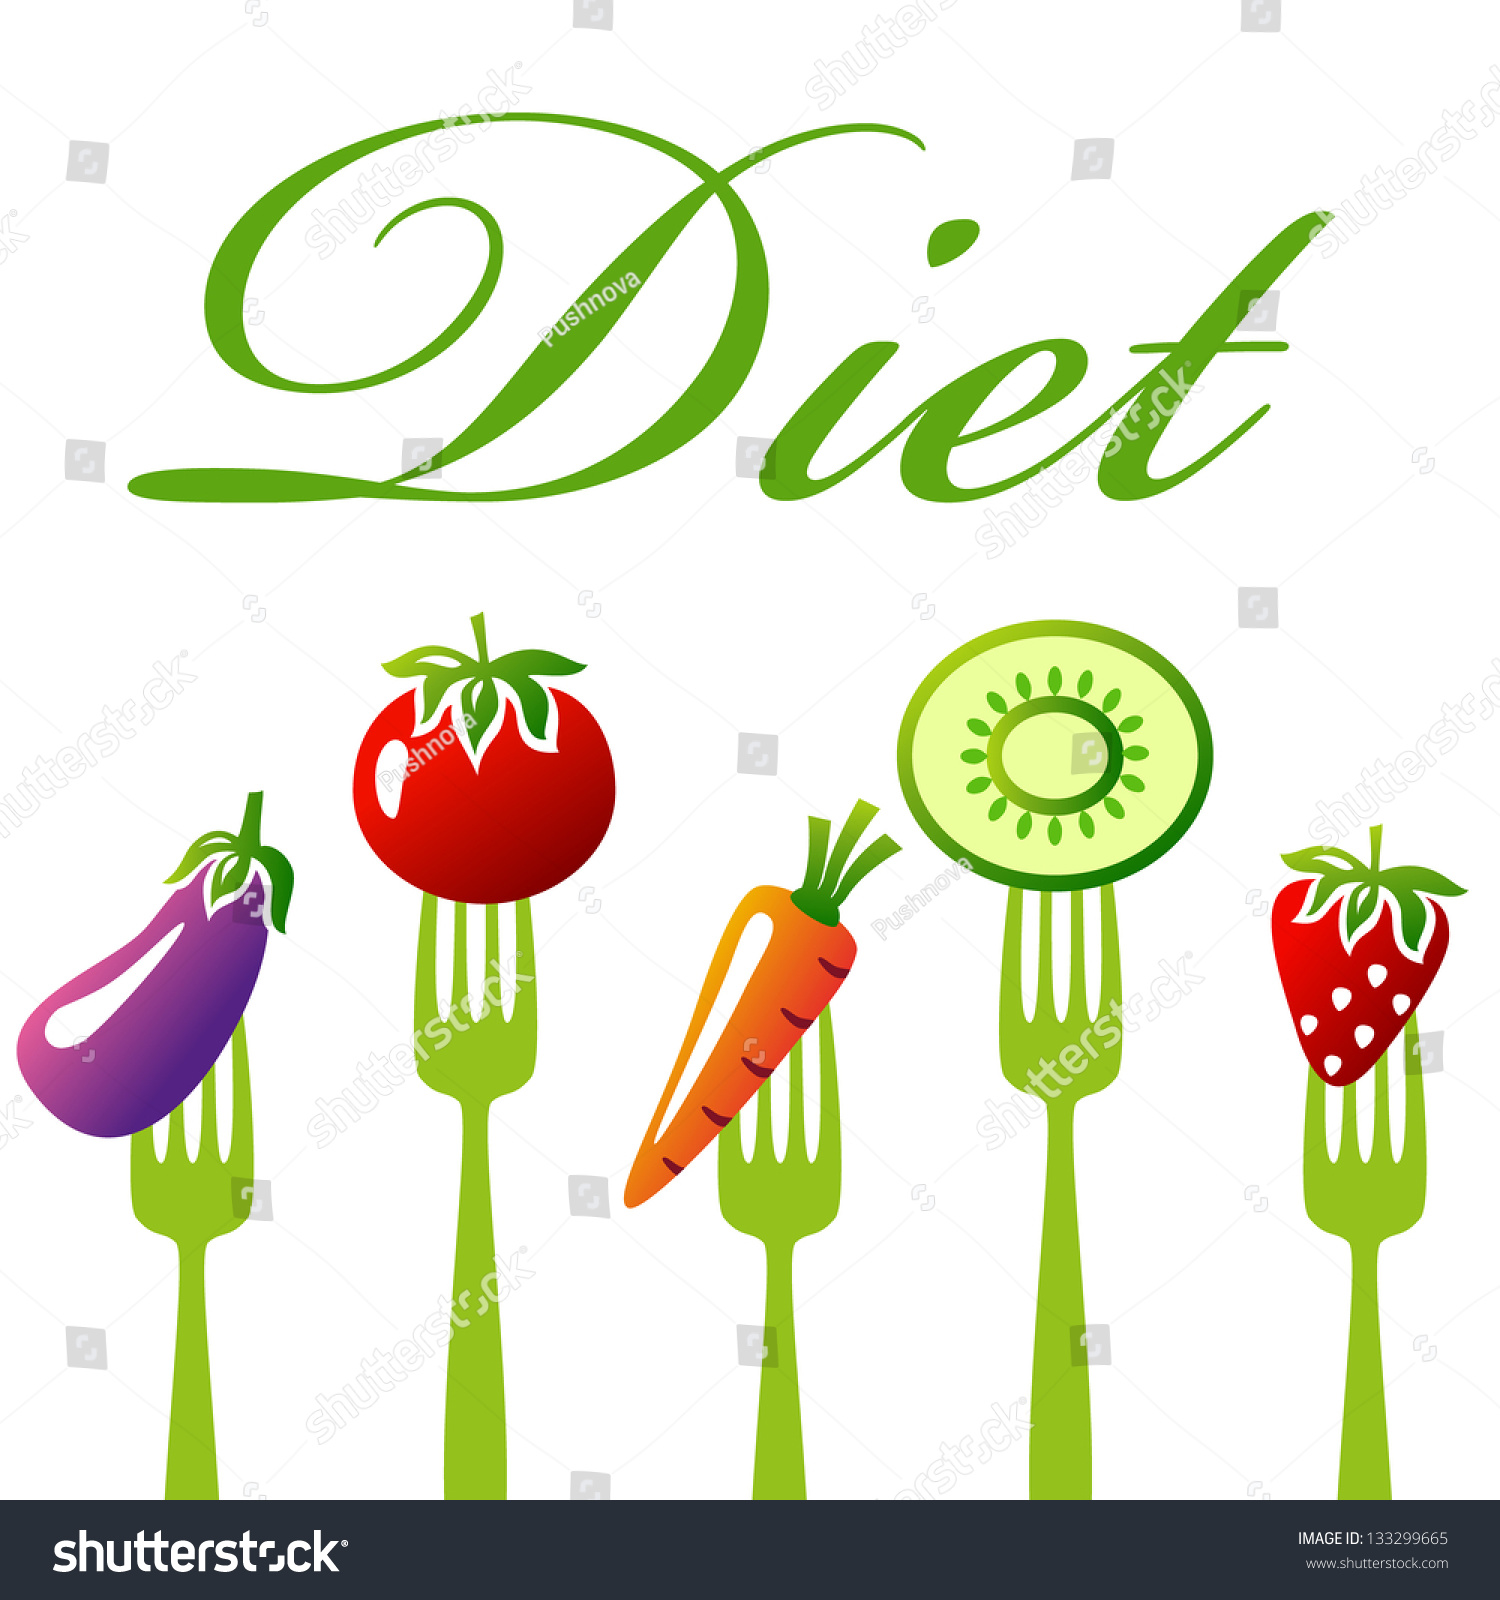 Healthy Food Diet Concept Snack Vegetables Stock Vector ...